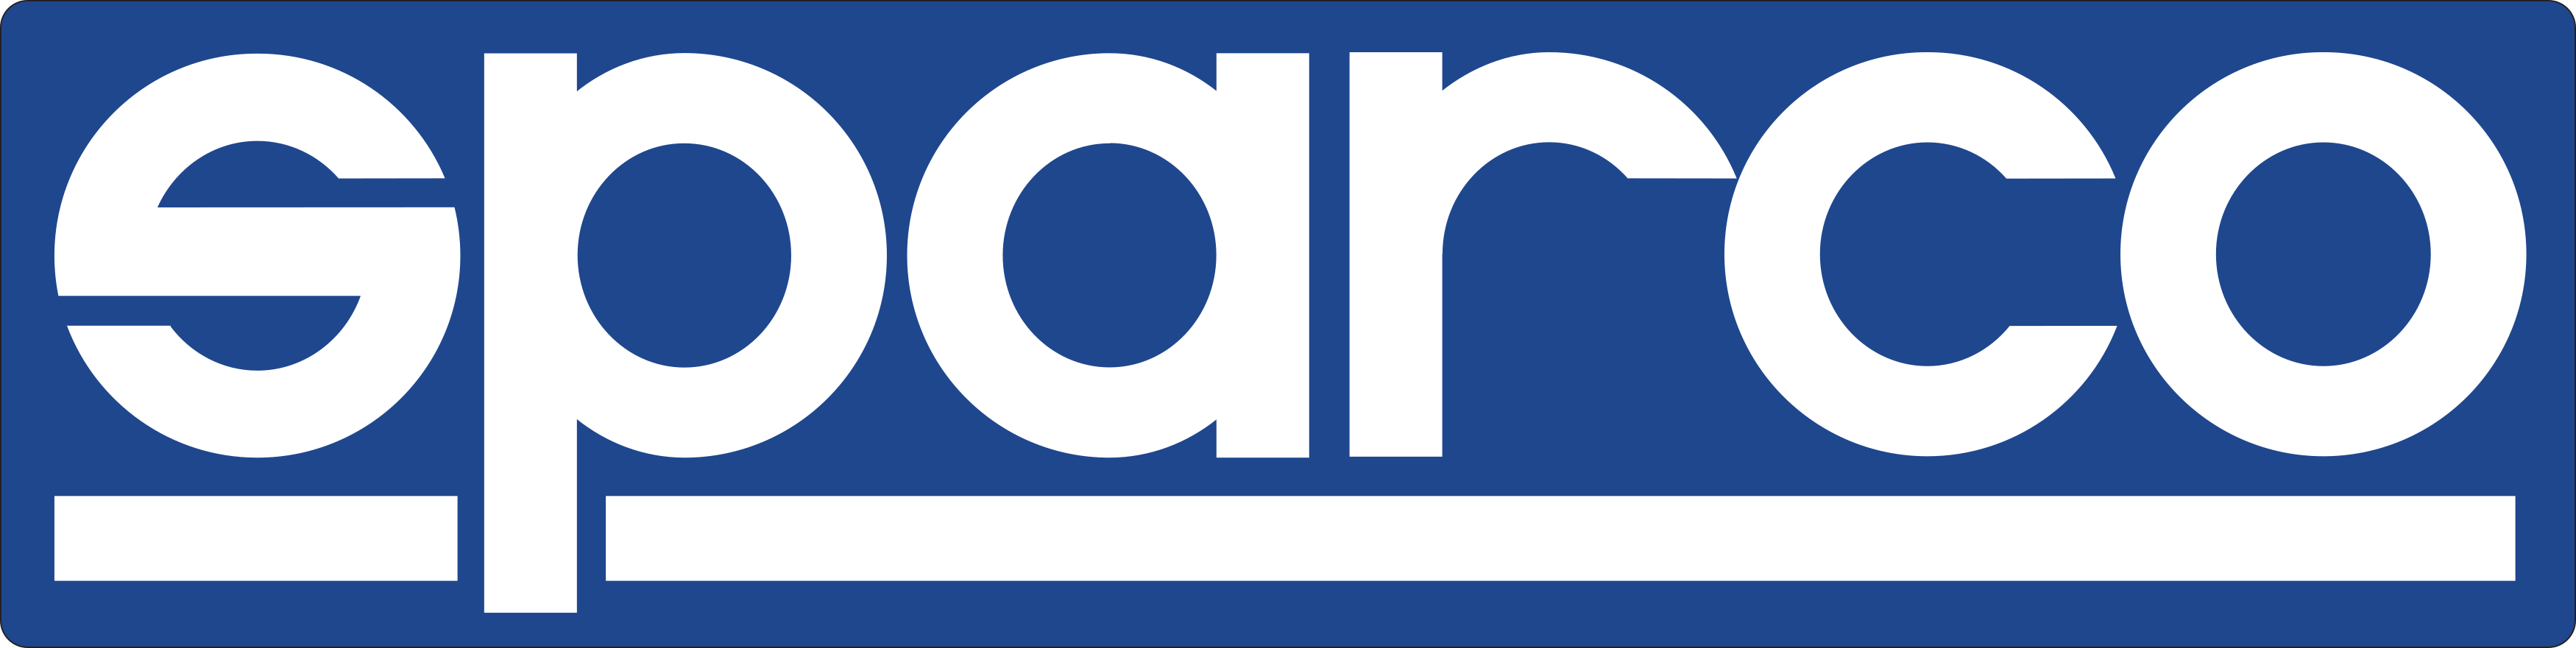 Sparco Logo.